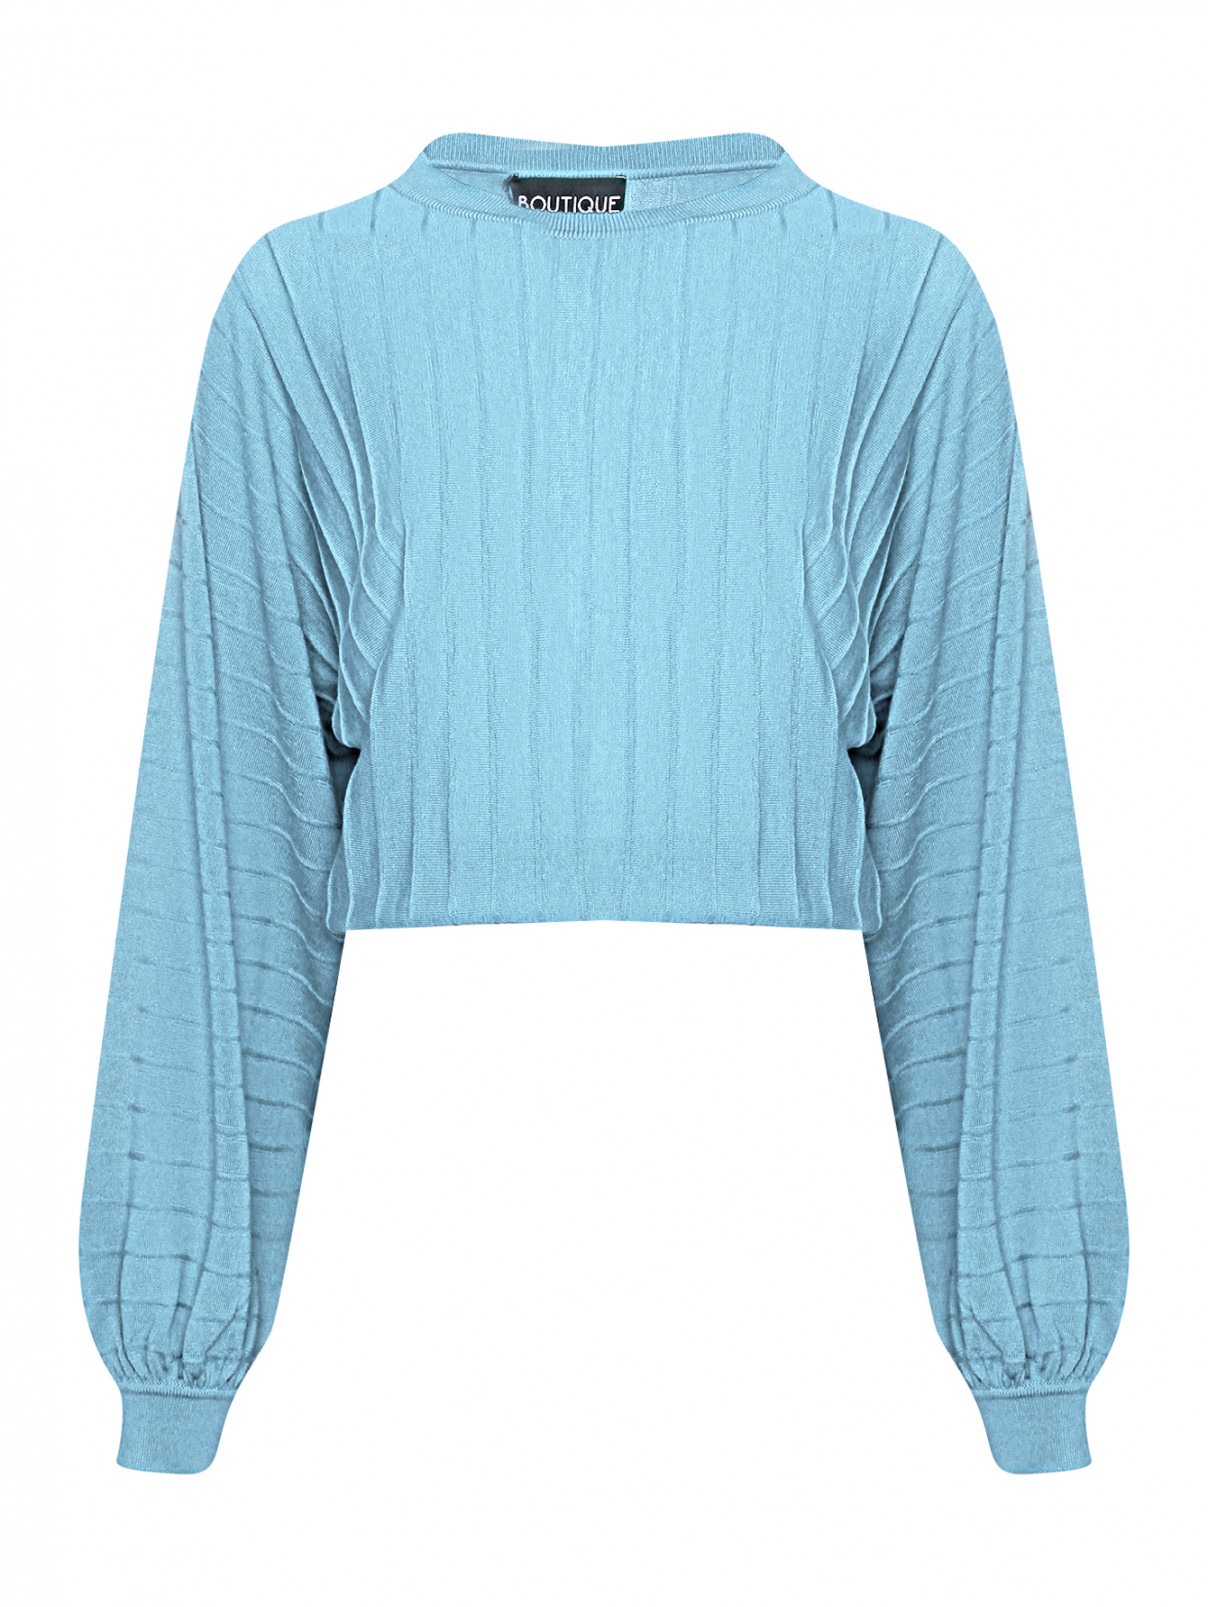 Джемпер из шерсти свободного кроя Moschino Boutique  –  Общий вид  – Цвет:  Синий